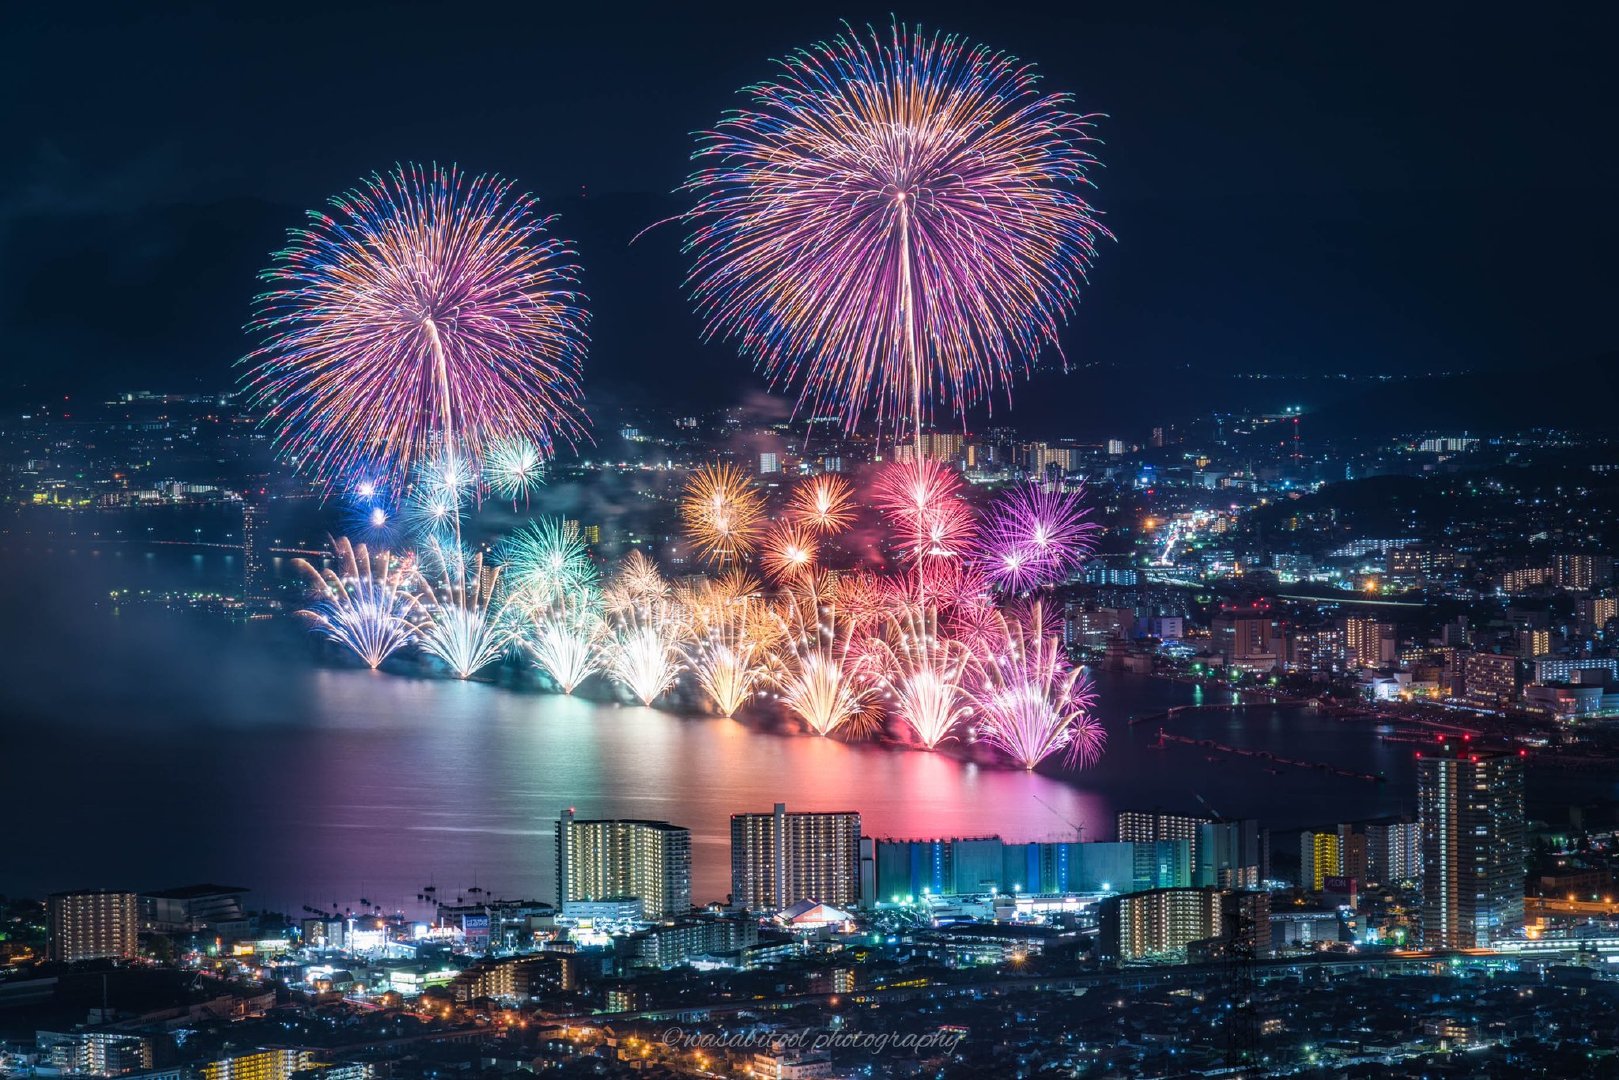 每年8月8日举办的琵琶湖花火大会本来因为要避开东京奥运延期到了11月